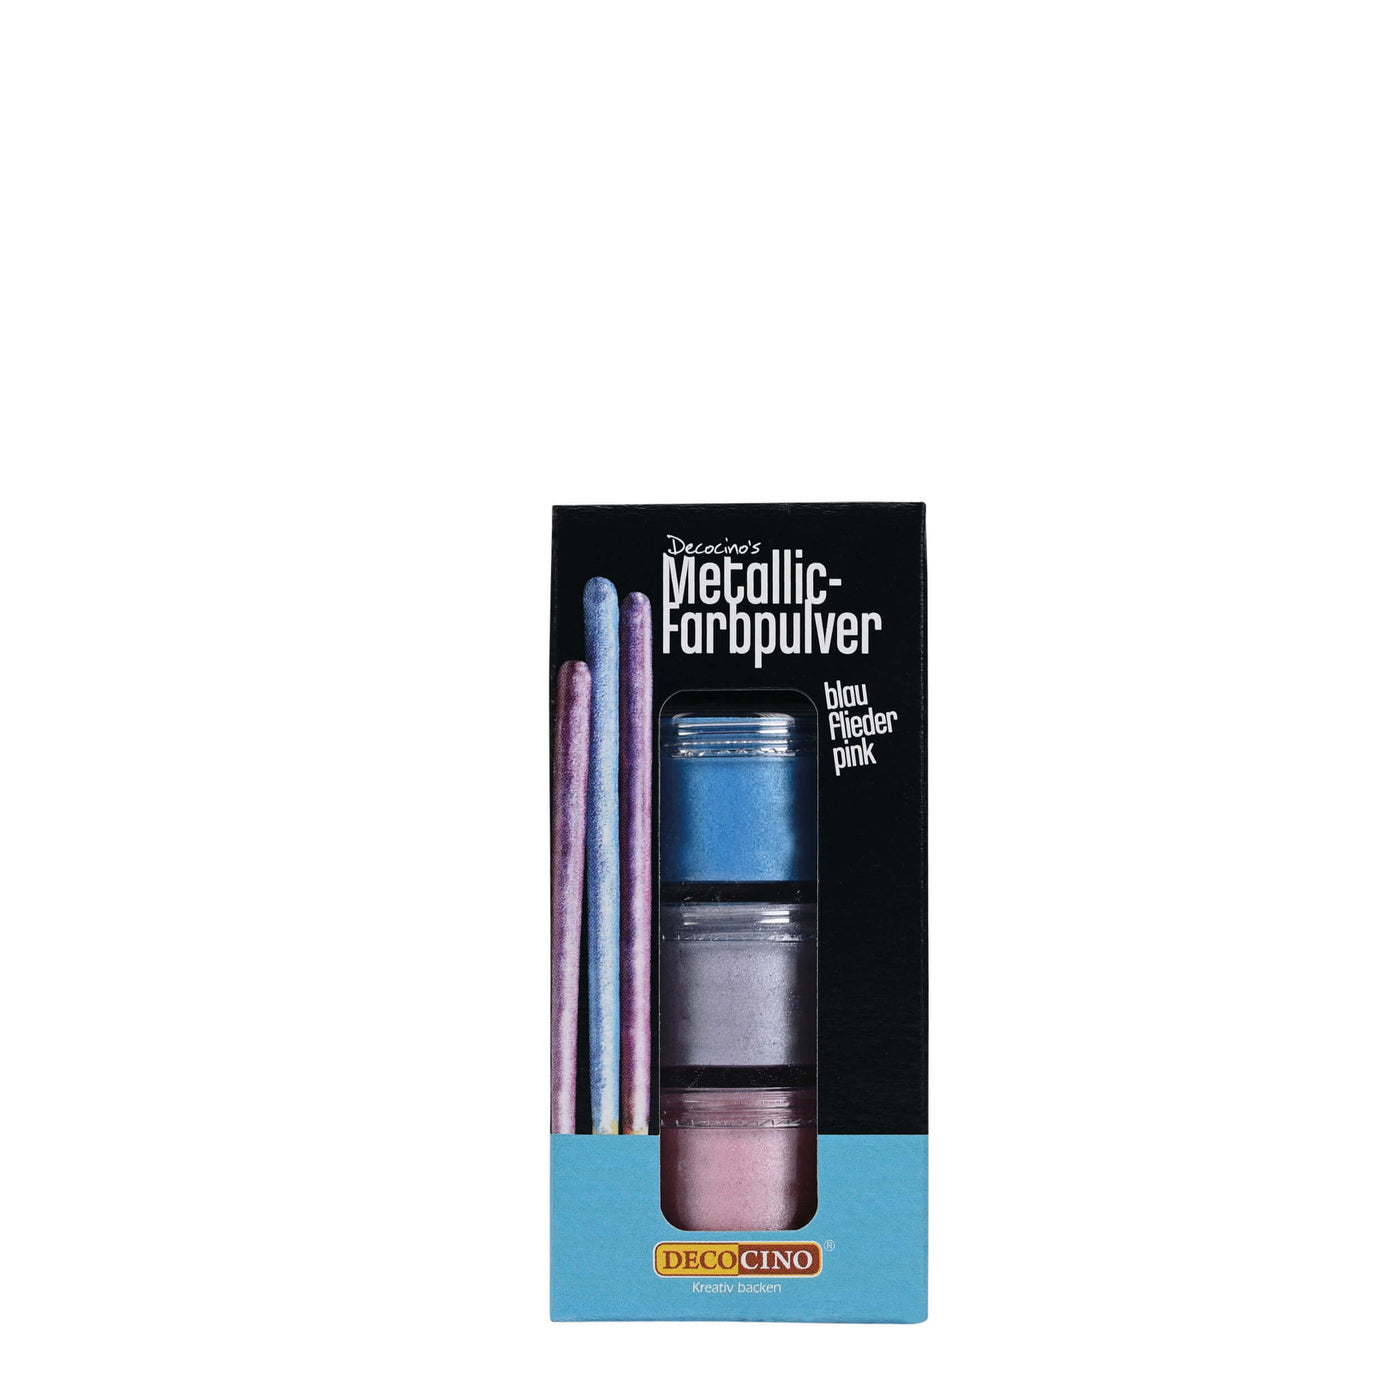 Metallic-Farbpulver 3-farbig blau/flieder/pink